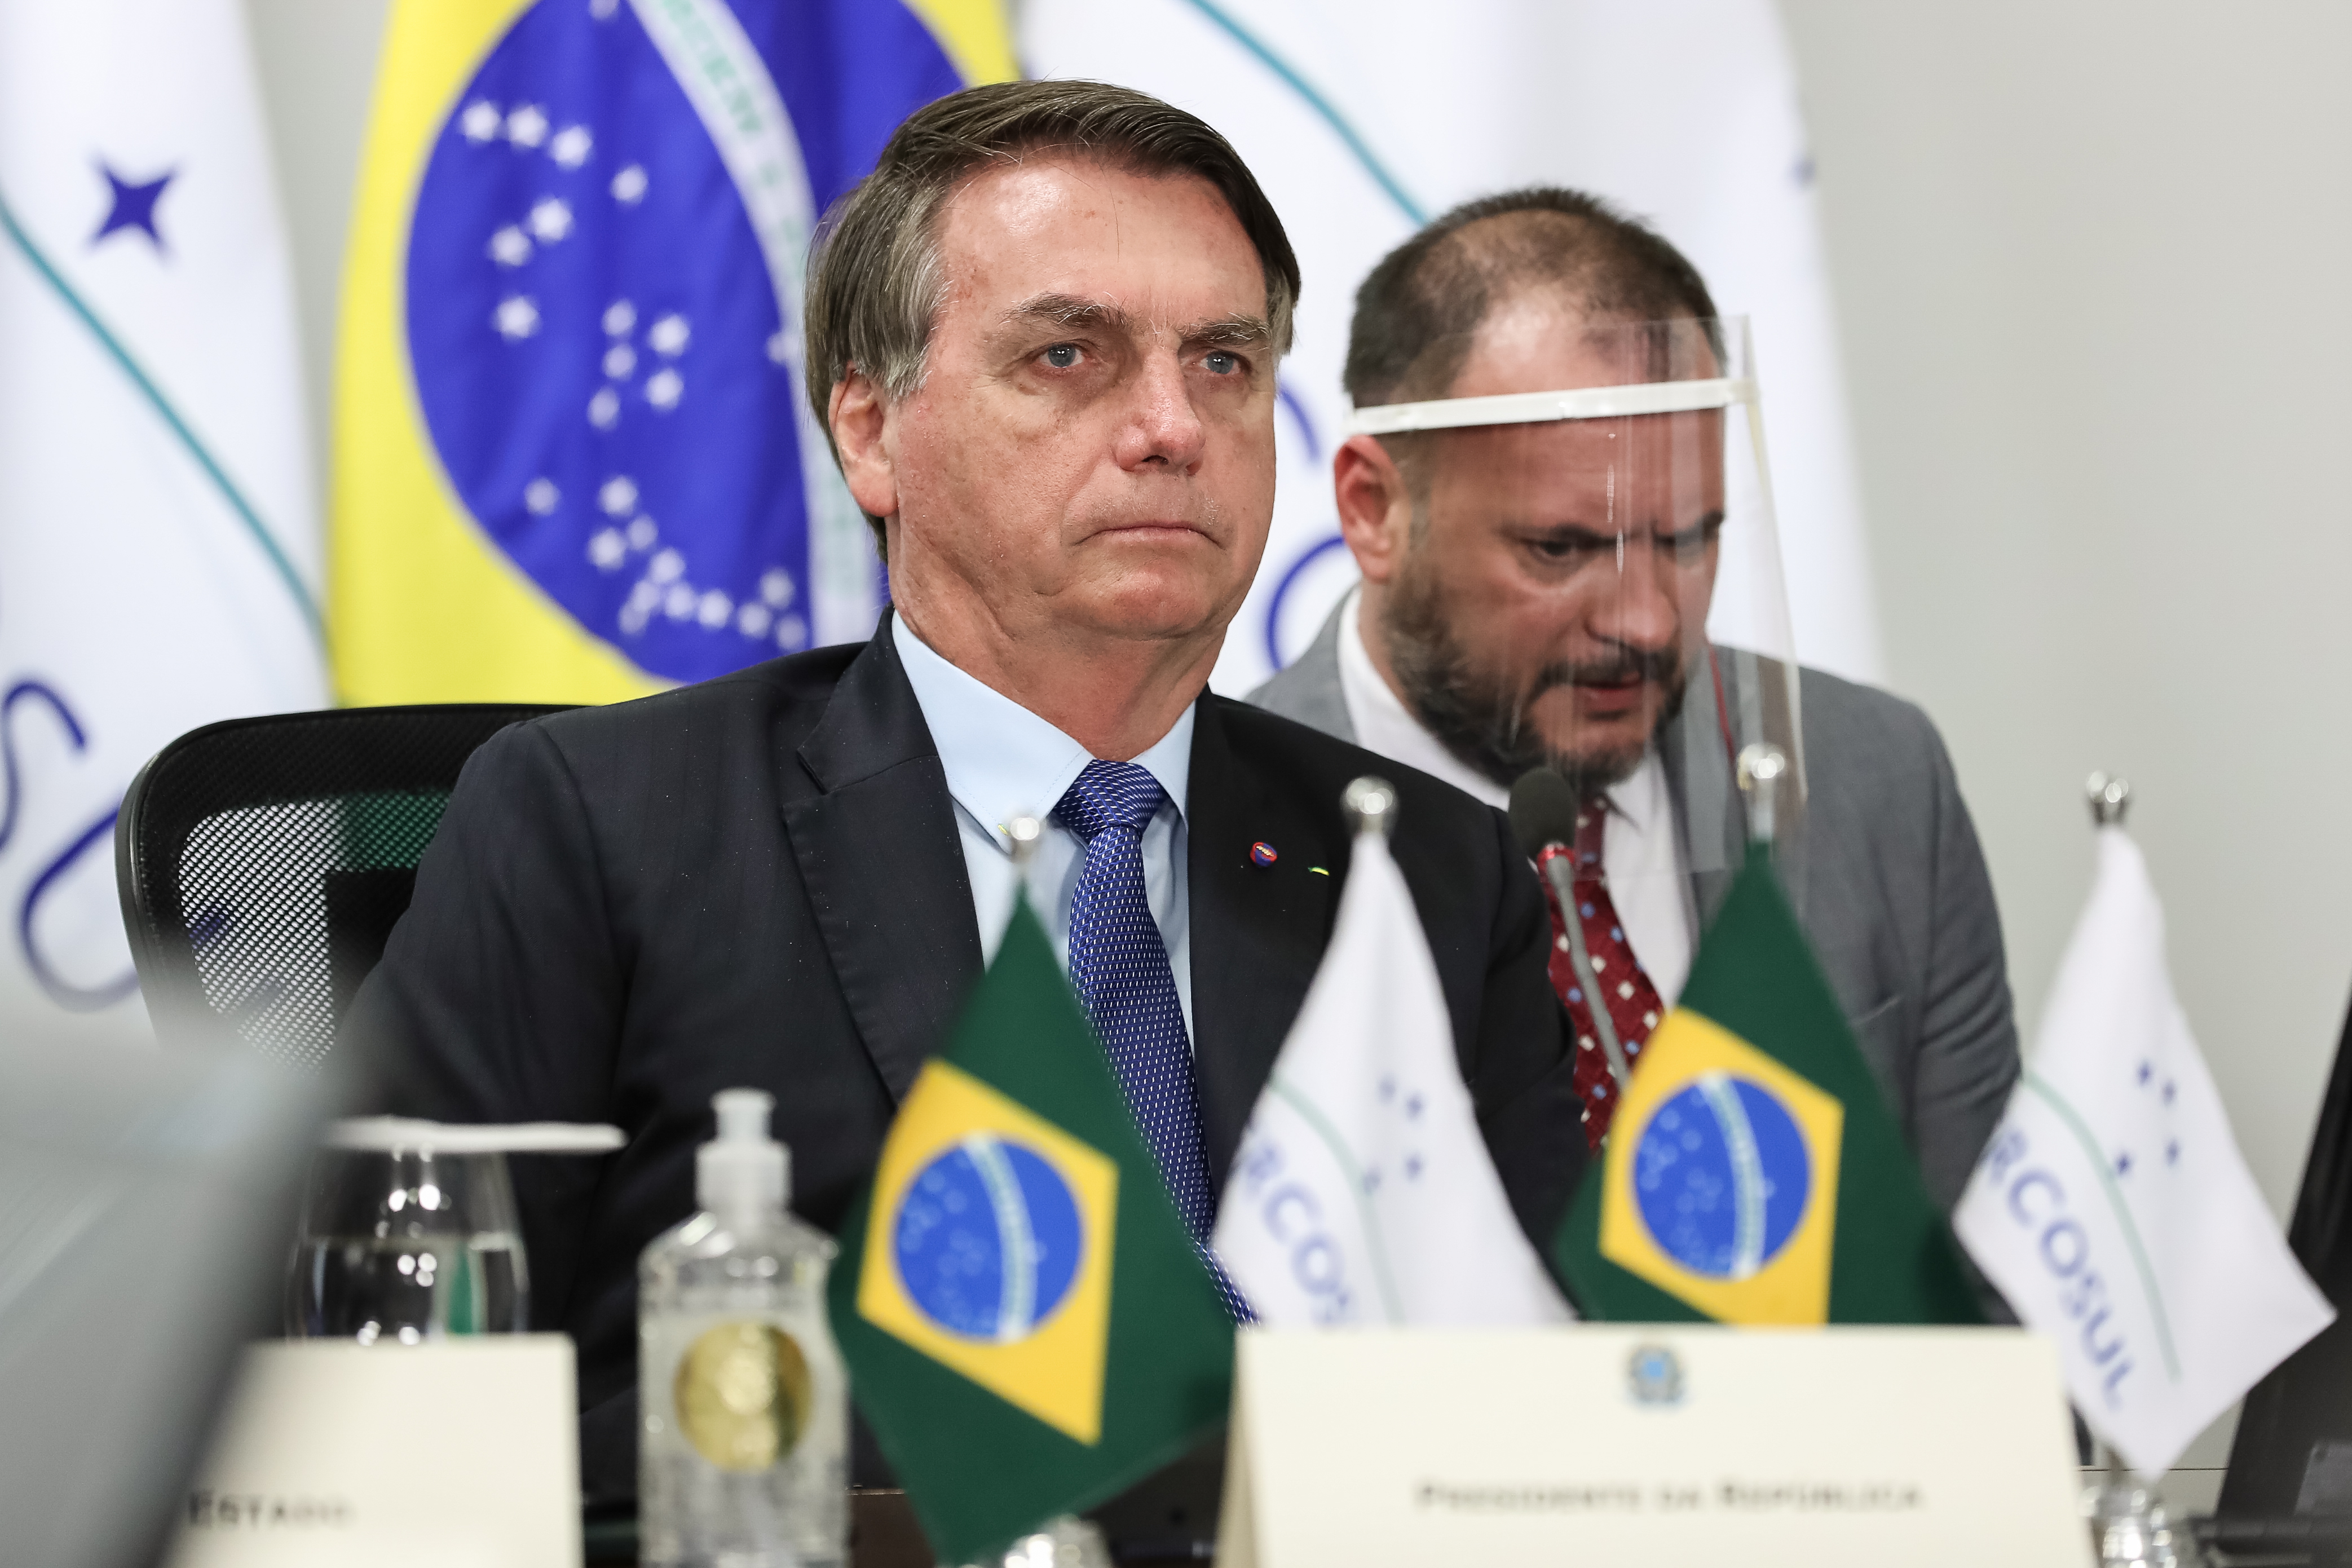 En 2019 Francia y Brasil protagonizaron una crisis diplomática a raíz de los incendios en la Amazonía (Marcos Correa/Brazilian presiden / DPA)
